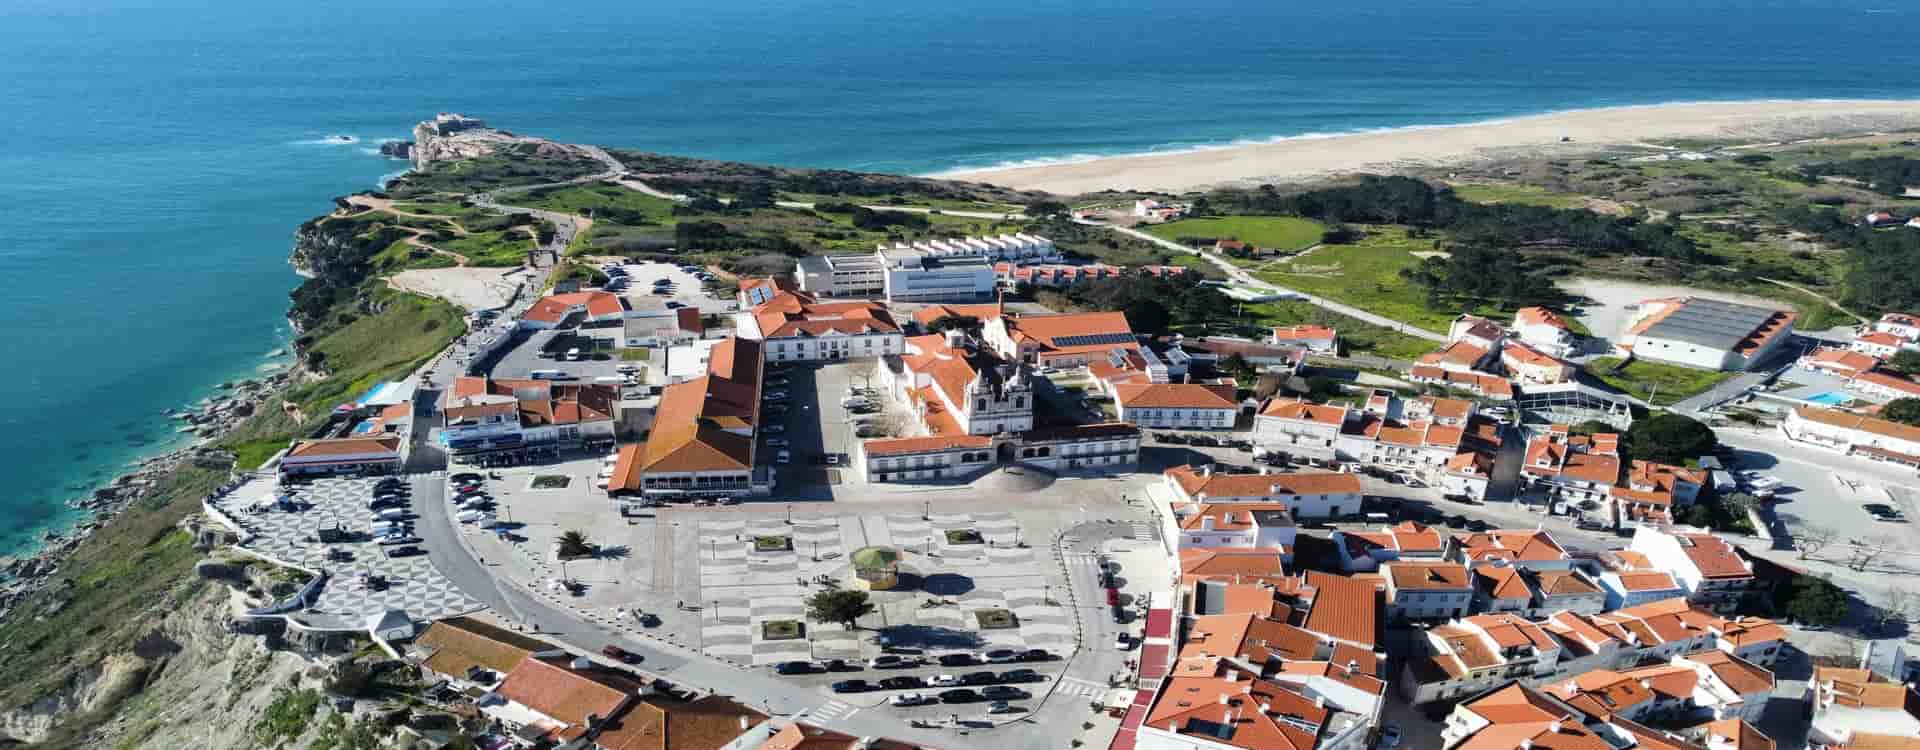 Estrada Atlântica de mota-nazaré Portugal